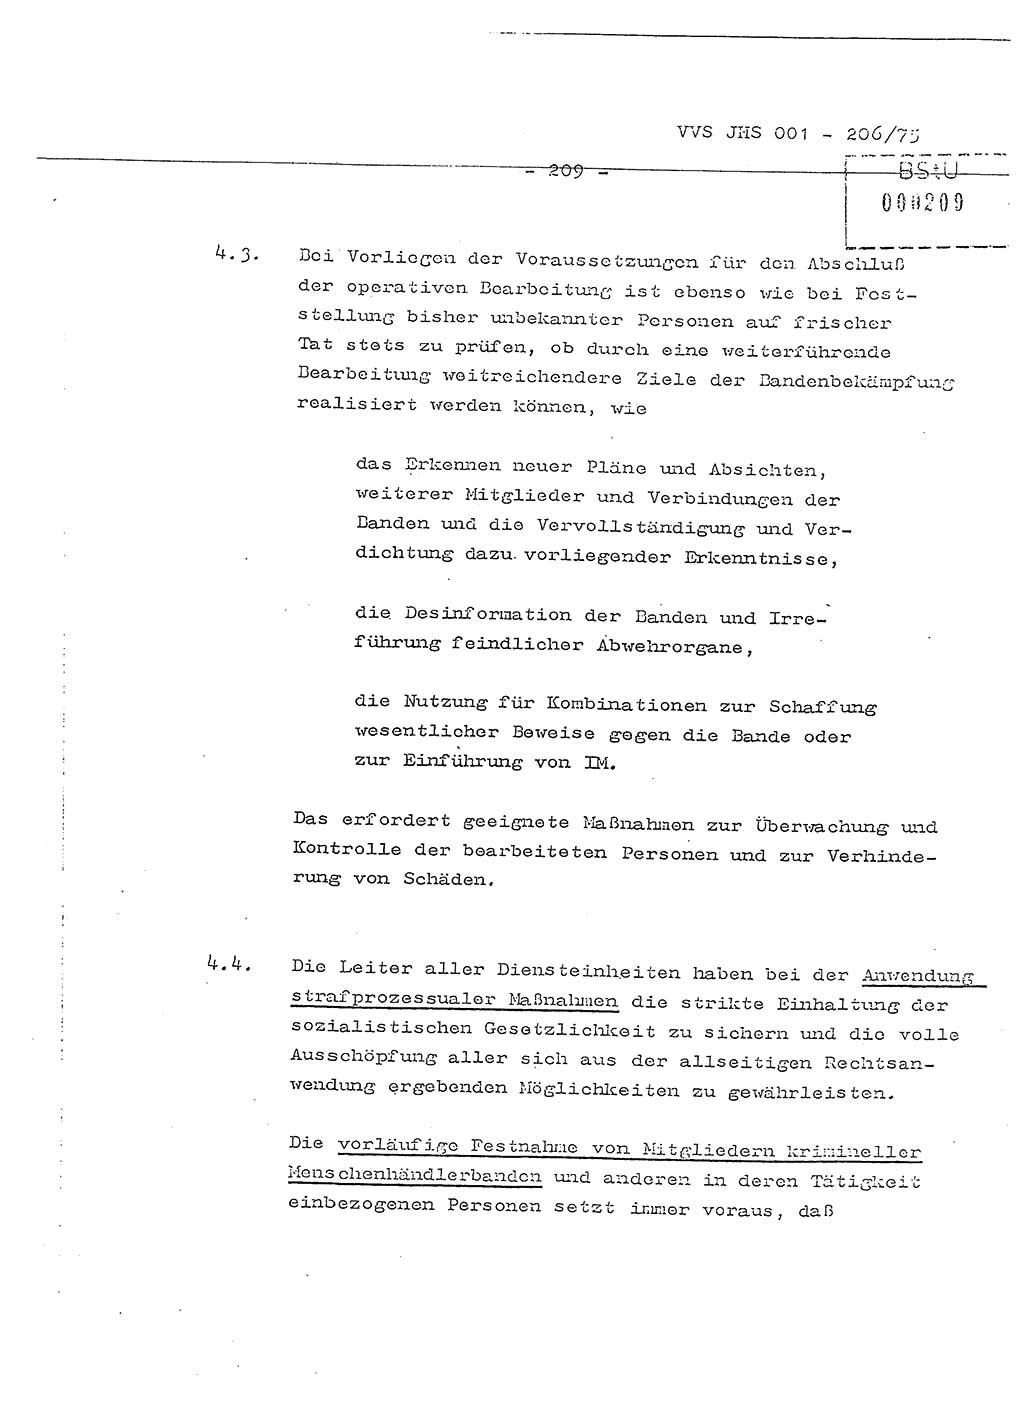 Dissertation Generalmajor Manfred Hummitzsch (Leiter der BV Leipzig), Generalmajor Heinz Fiedler (HA Ⅵ), Oberst Rolf Fister (HA Ⅸ), Ministerium für Staatssicherheit (MfS) [Deutsche Demokratische Republik (DDR)], Juristische Hochschule (JHS), Vertrauliche Verschlußsache (VVS) 001-206/75, Potsdam 1975, Seite 209 (Diss. MfS DDR JHS VVS 001-206/75 1975, S. 209)